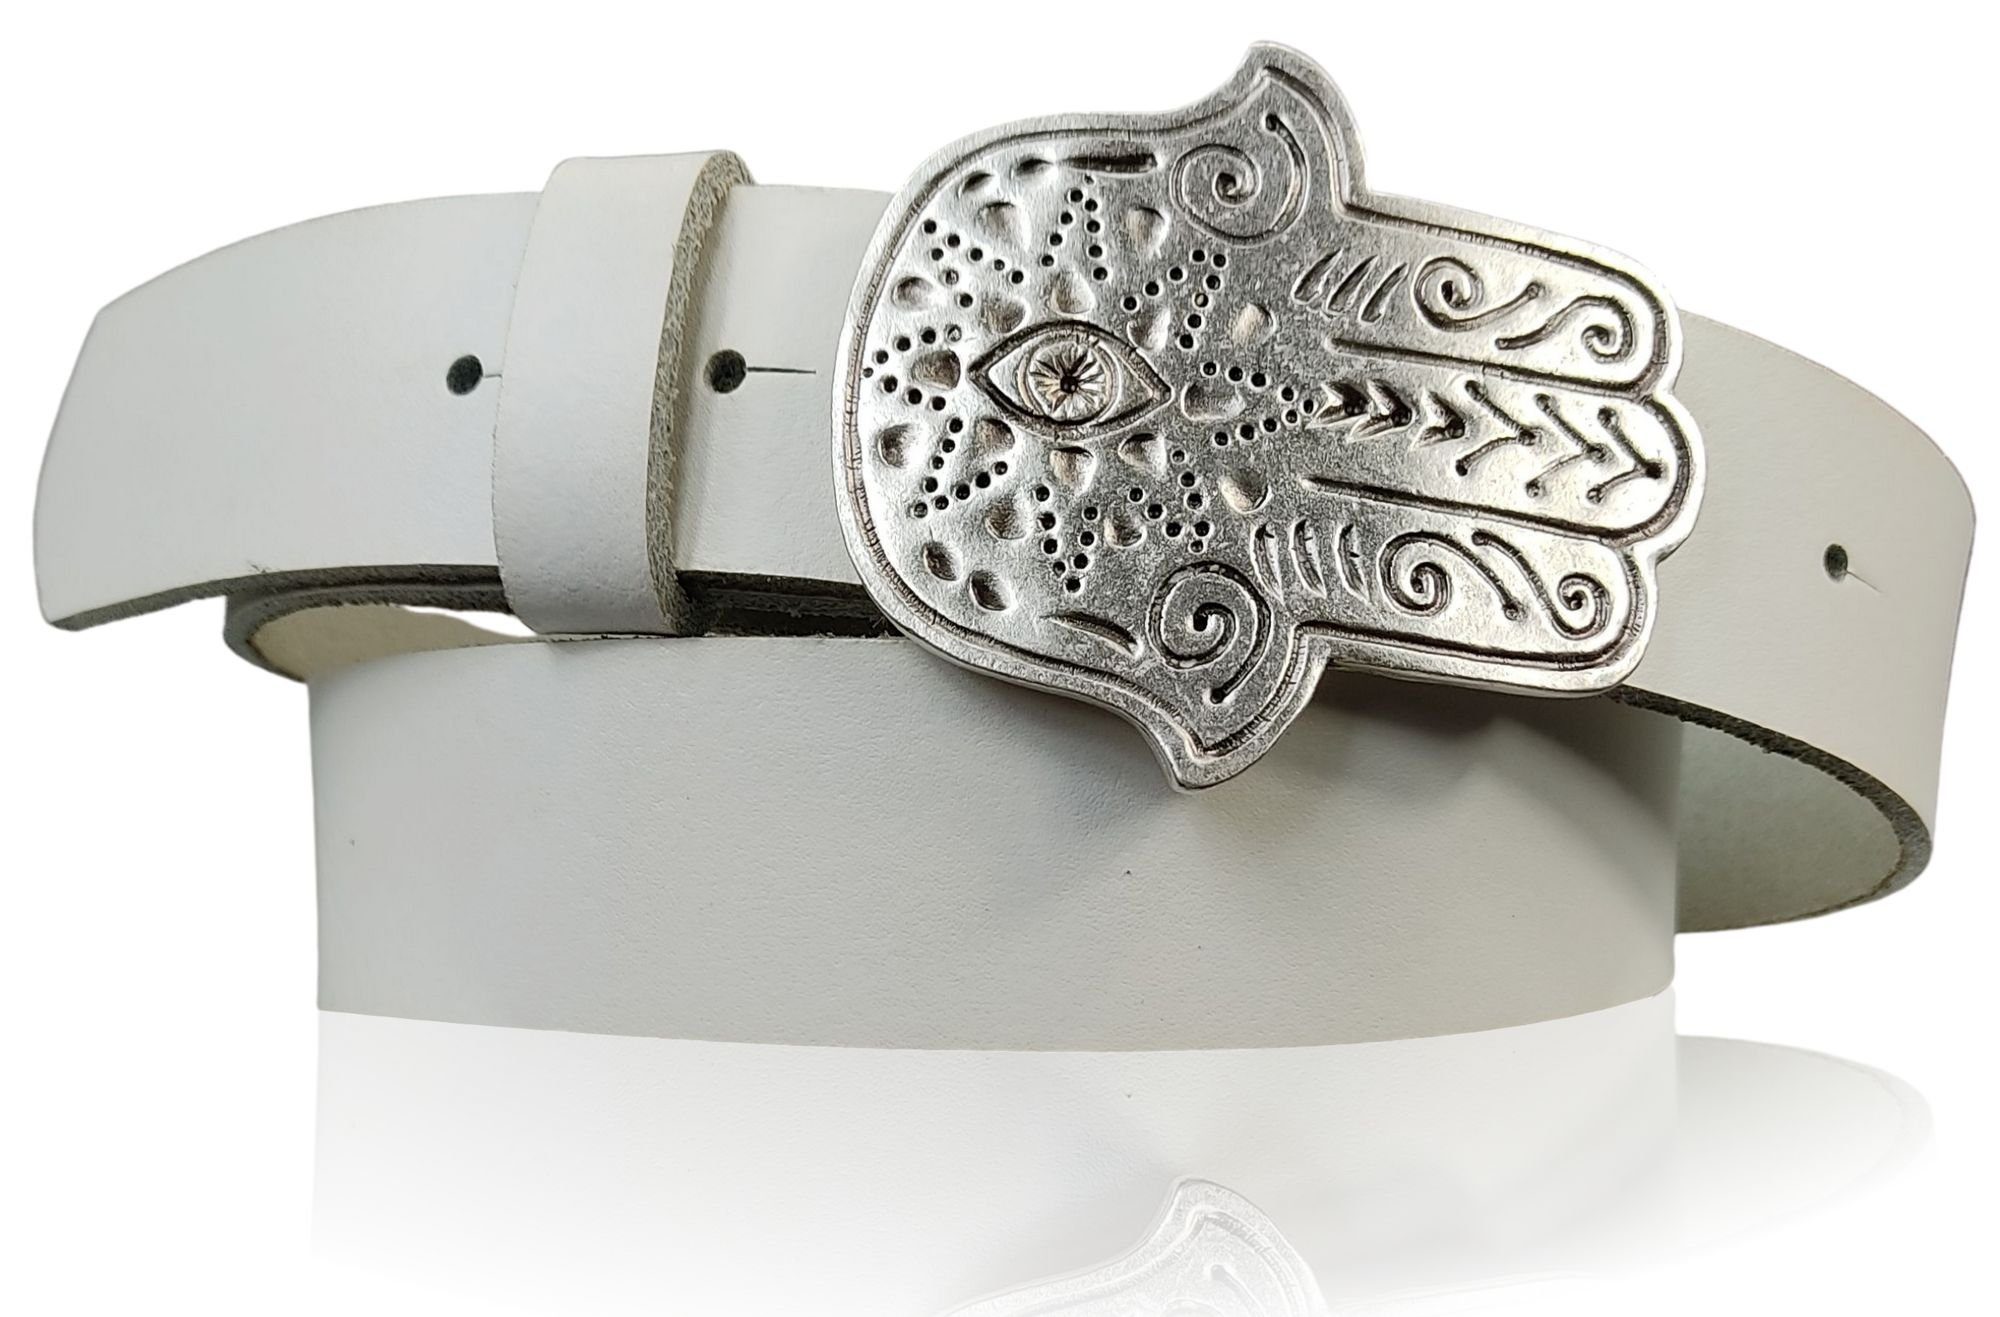 FRONHOFER Hüftgürtel 18610 Damen Ledergürtel 4 cm mit versilberter Hand der Fatima Gürtelschnalle Weiß